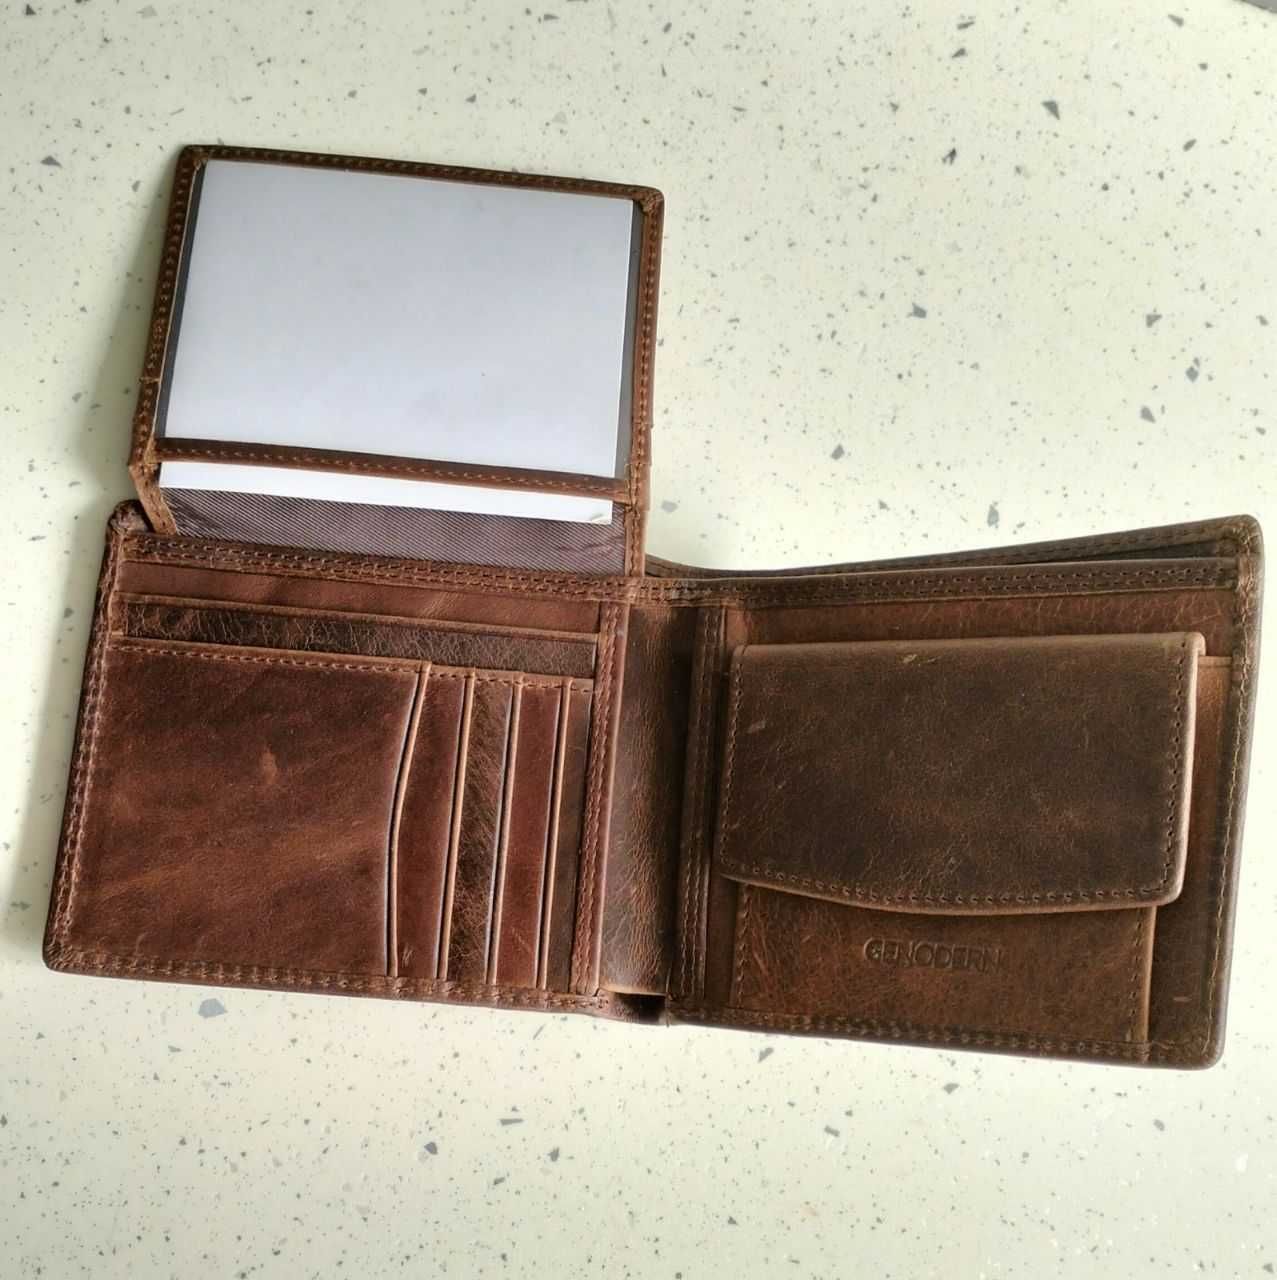 Мужское классическое портмоне - кошелек из натуральной кожи